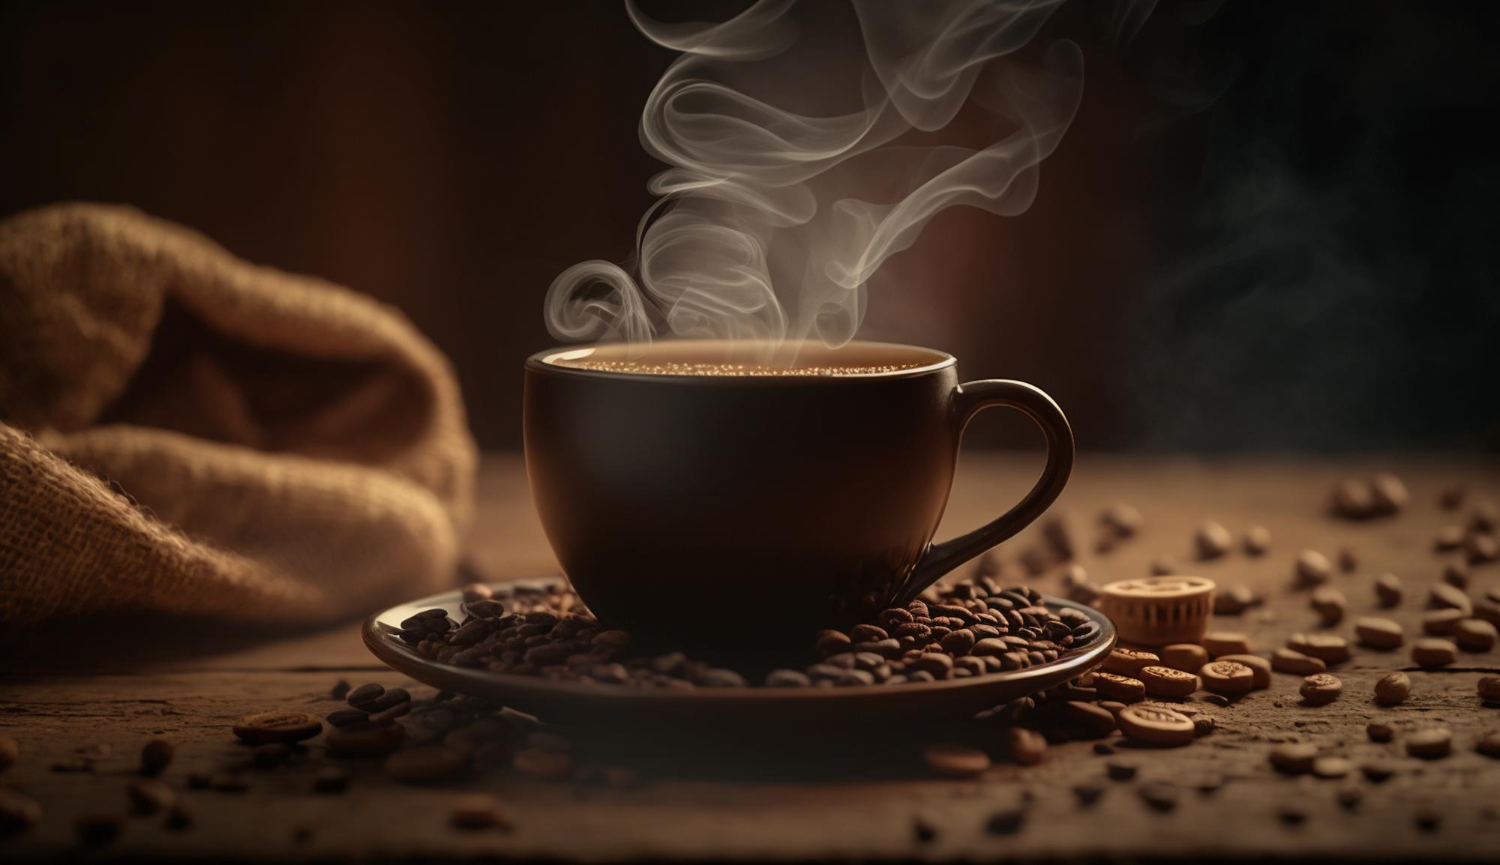 ศิลปะการชงกาแฟ: การสร้างดีไซน์ที่สวยงามในแก้วของคุณ